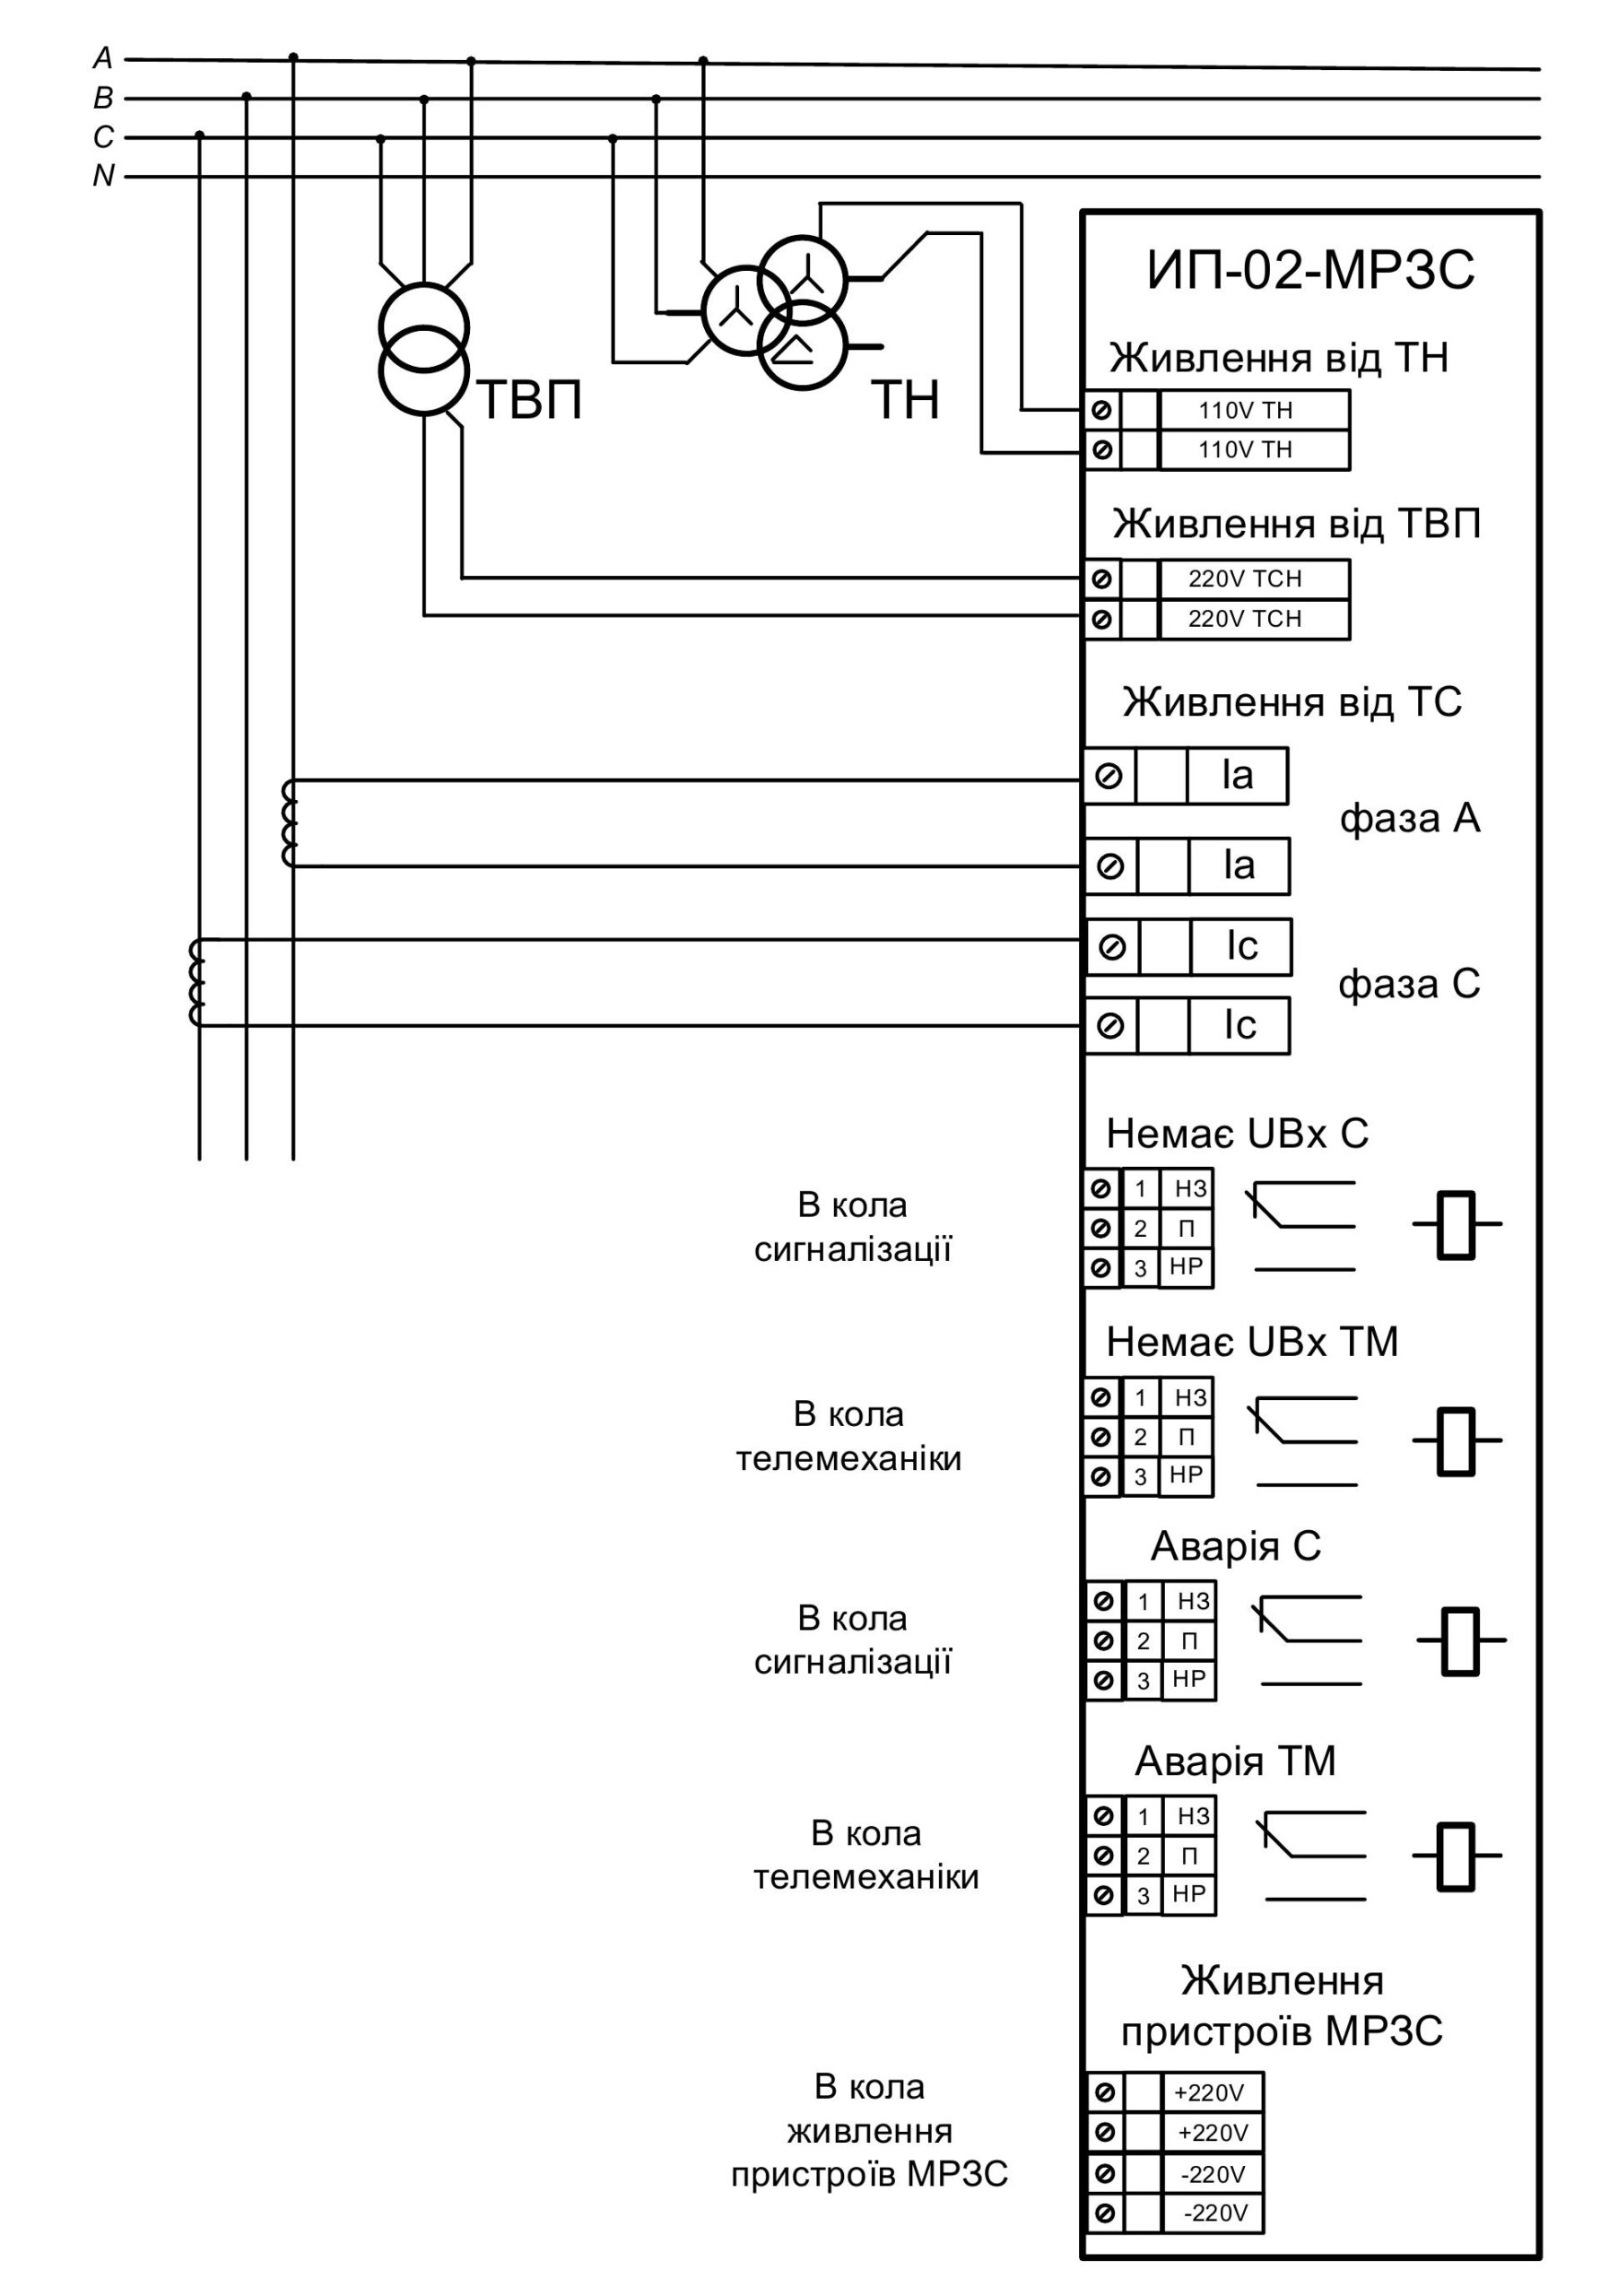 Сonnection diagram IP-02